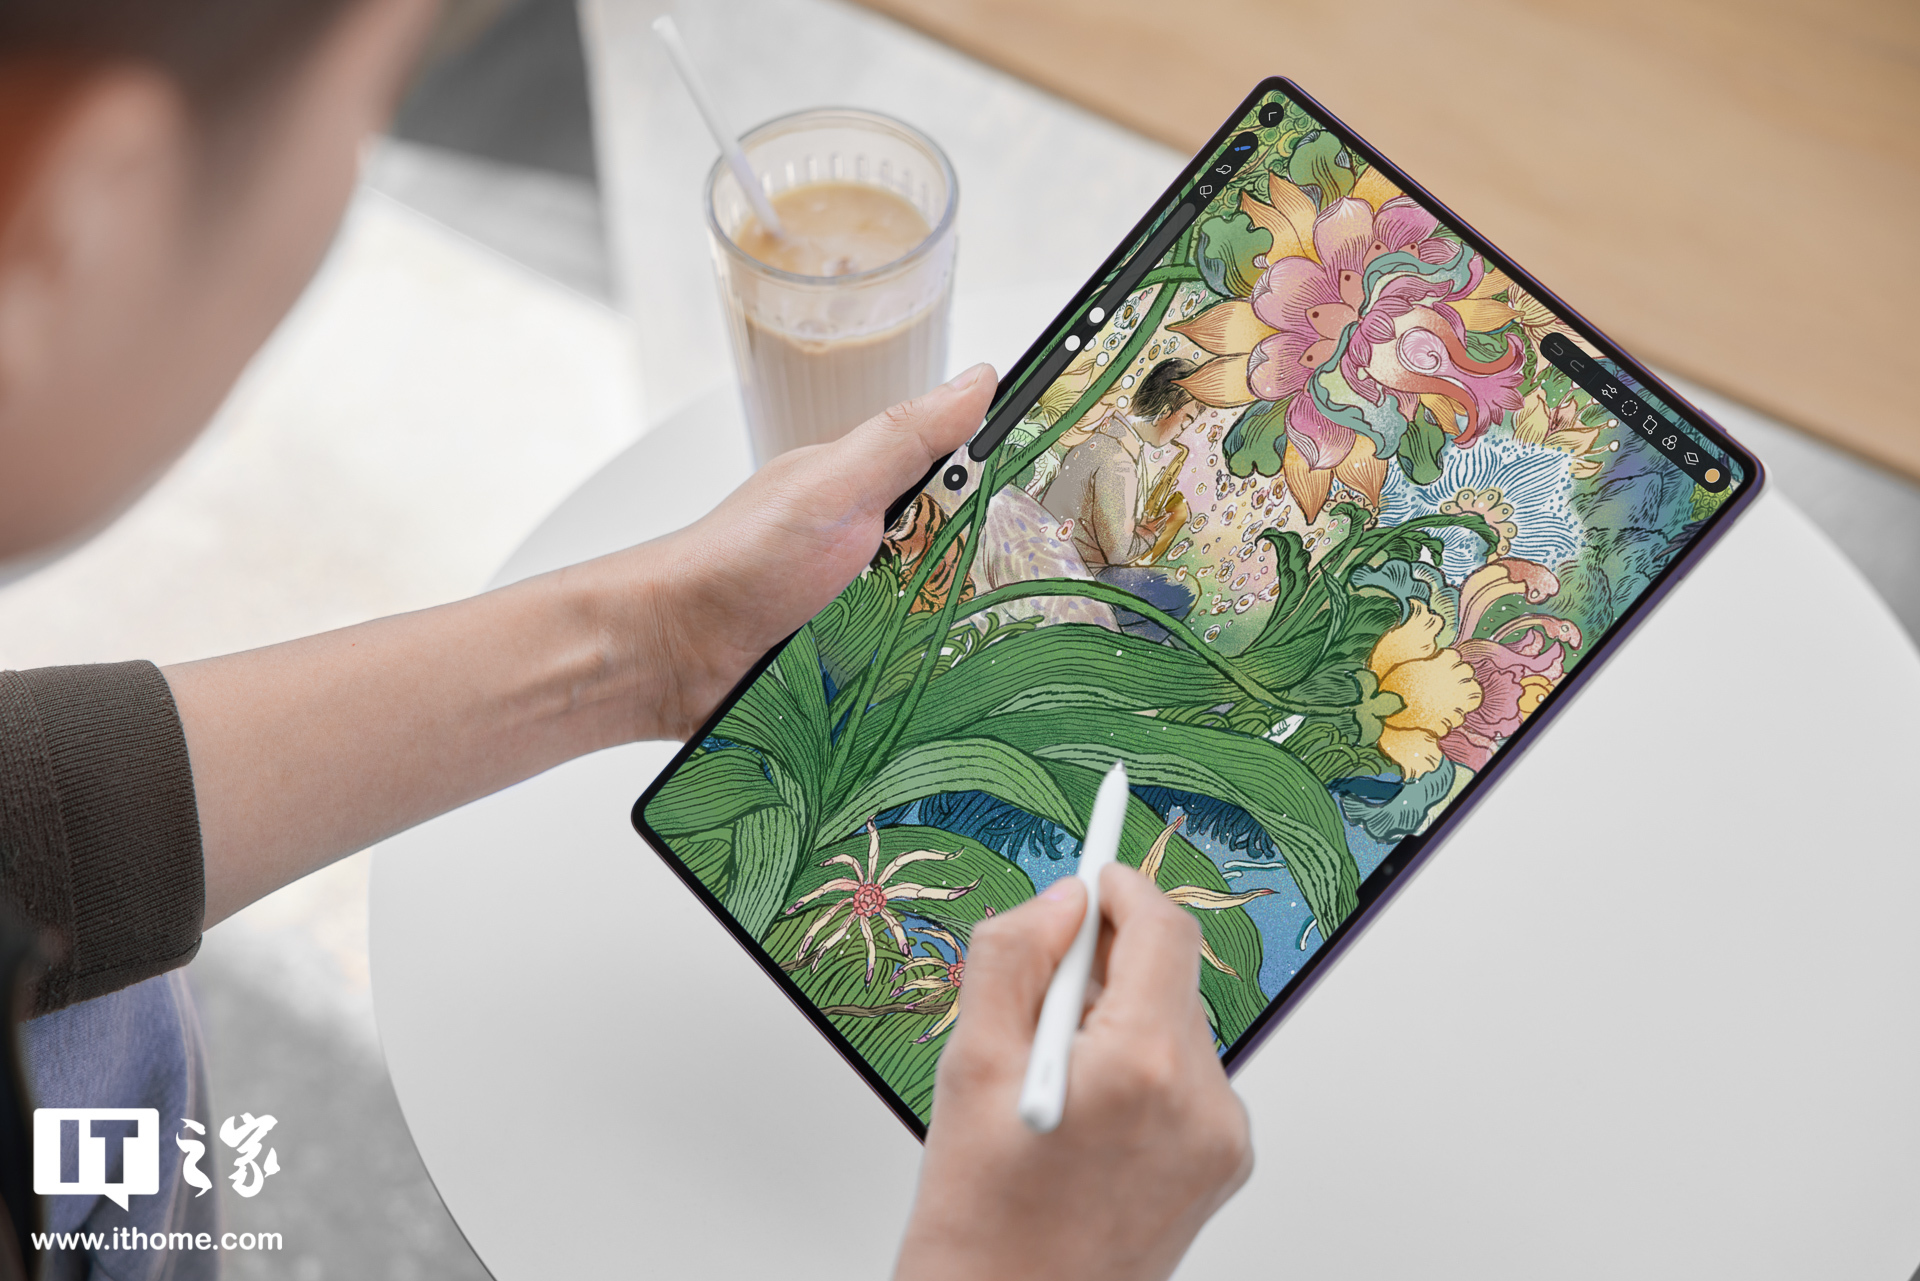 华为 MatePad Pro 13.2 英寸「罗兰紫」图赏：首发预装天生会画 App，无边大屏赋能绘画创作体验